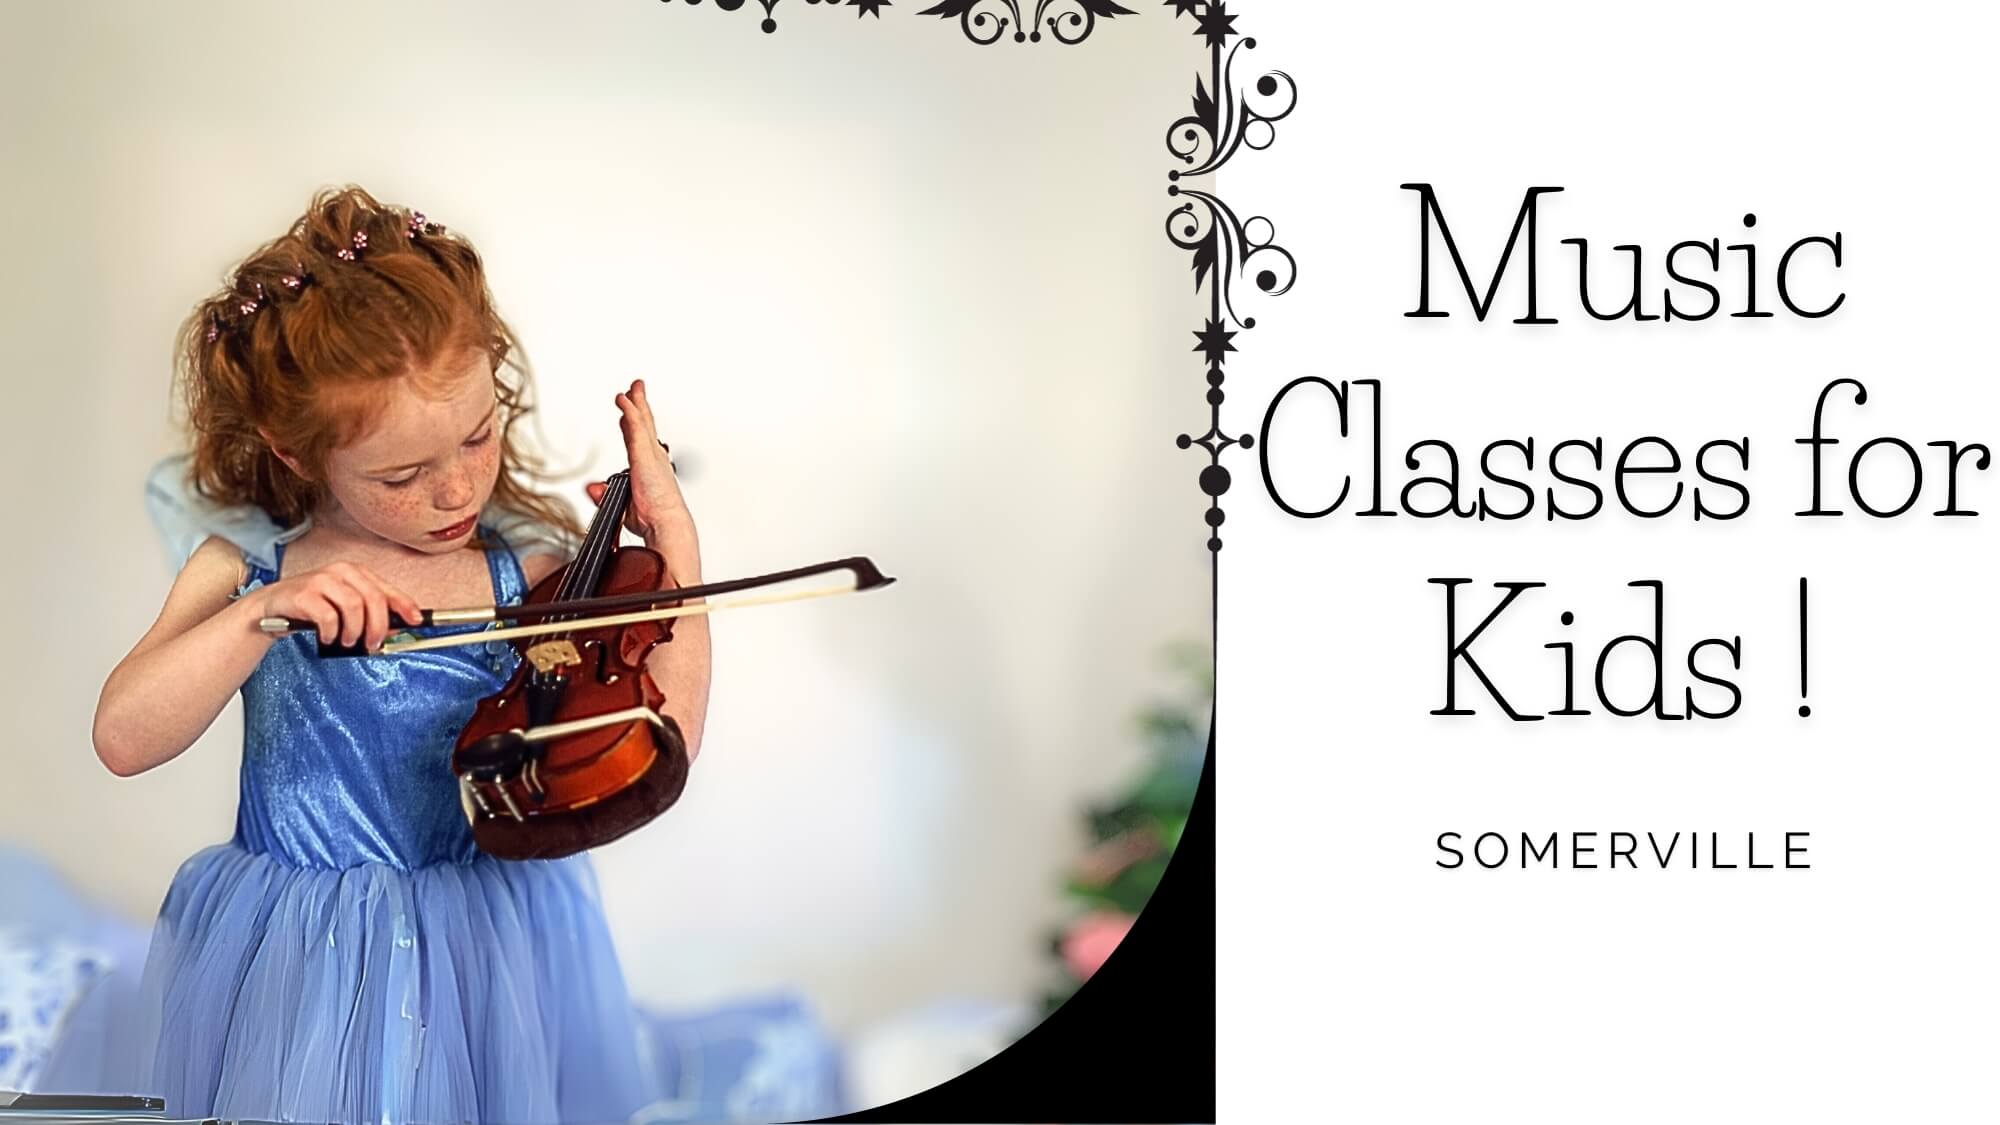 Music Classes for Kids in Somerville, Massachusetts